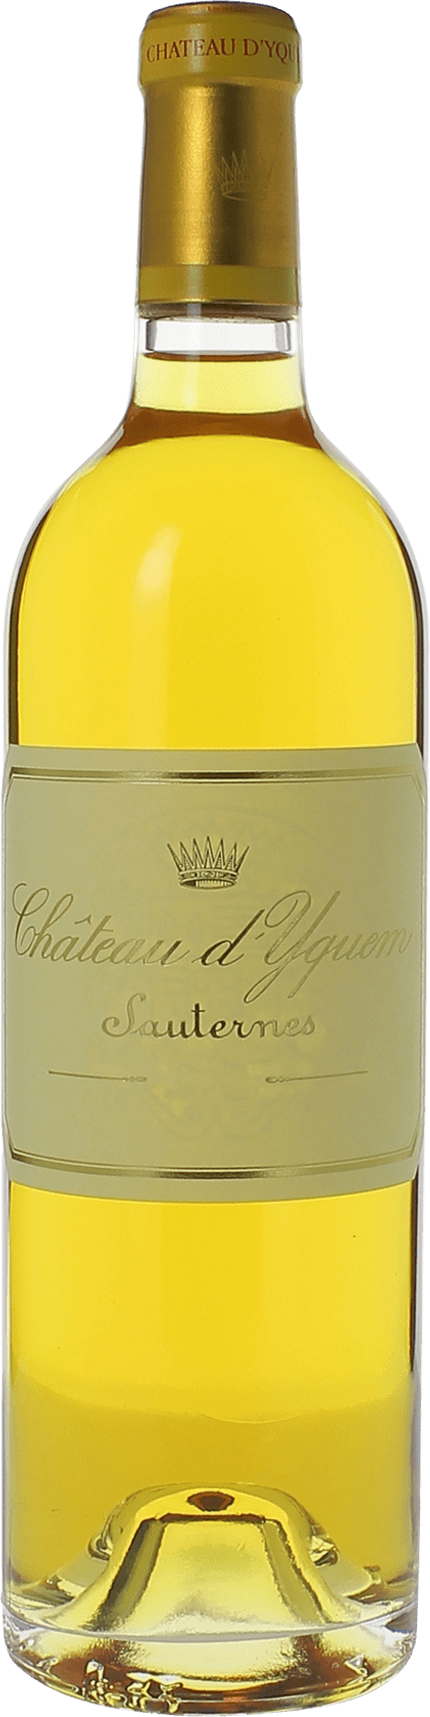 Yquem 2000 1er Grand cru class Sauternes, Bordeaux blanc